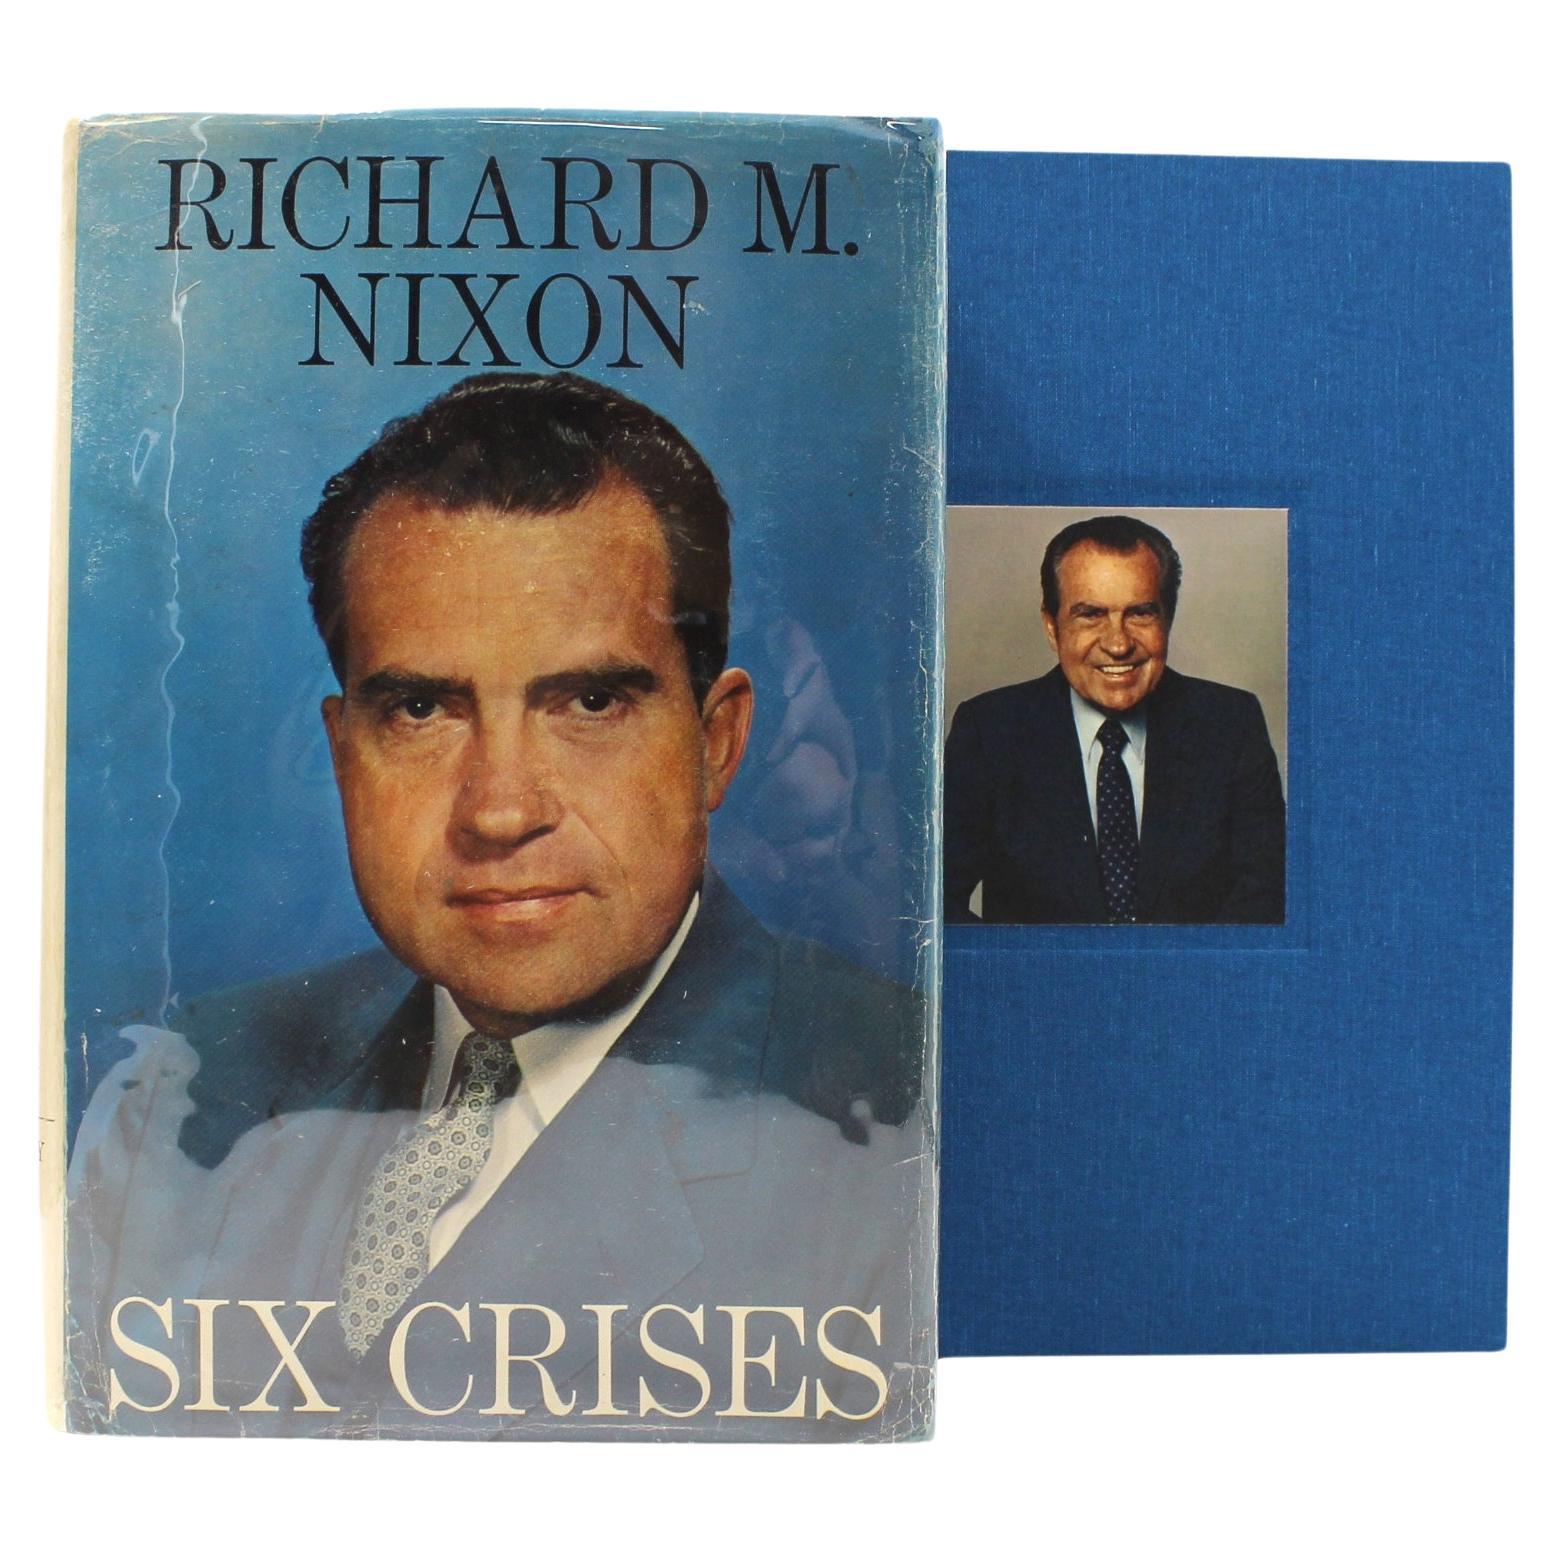 Sechs Crises, signiert von Richard Nixon, Erstausgabe, 1962